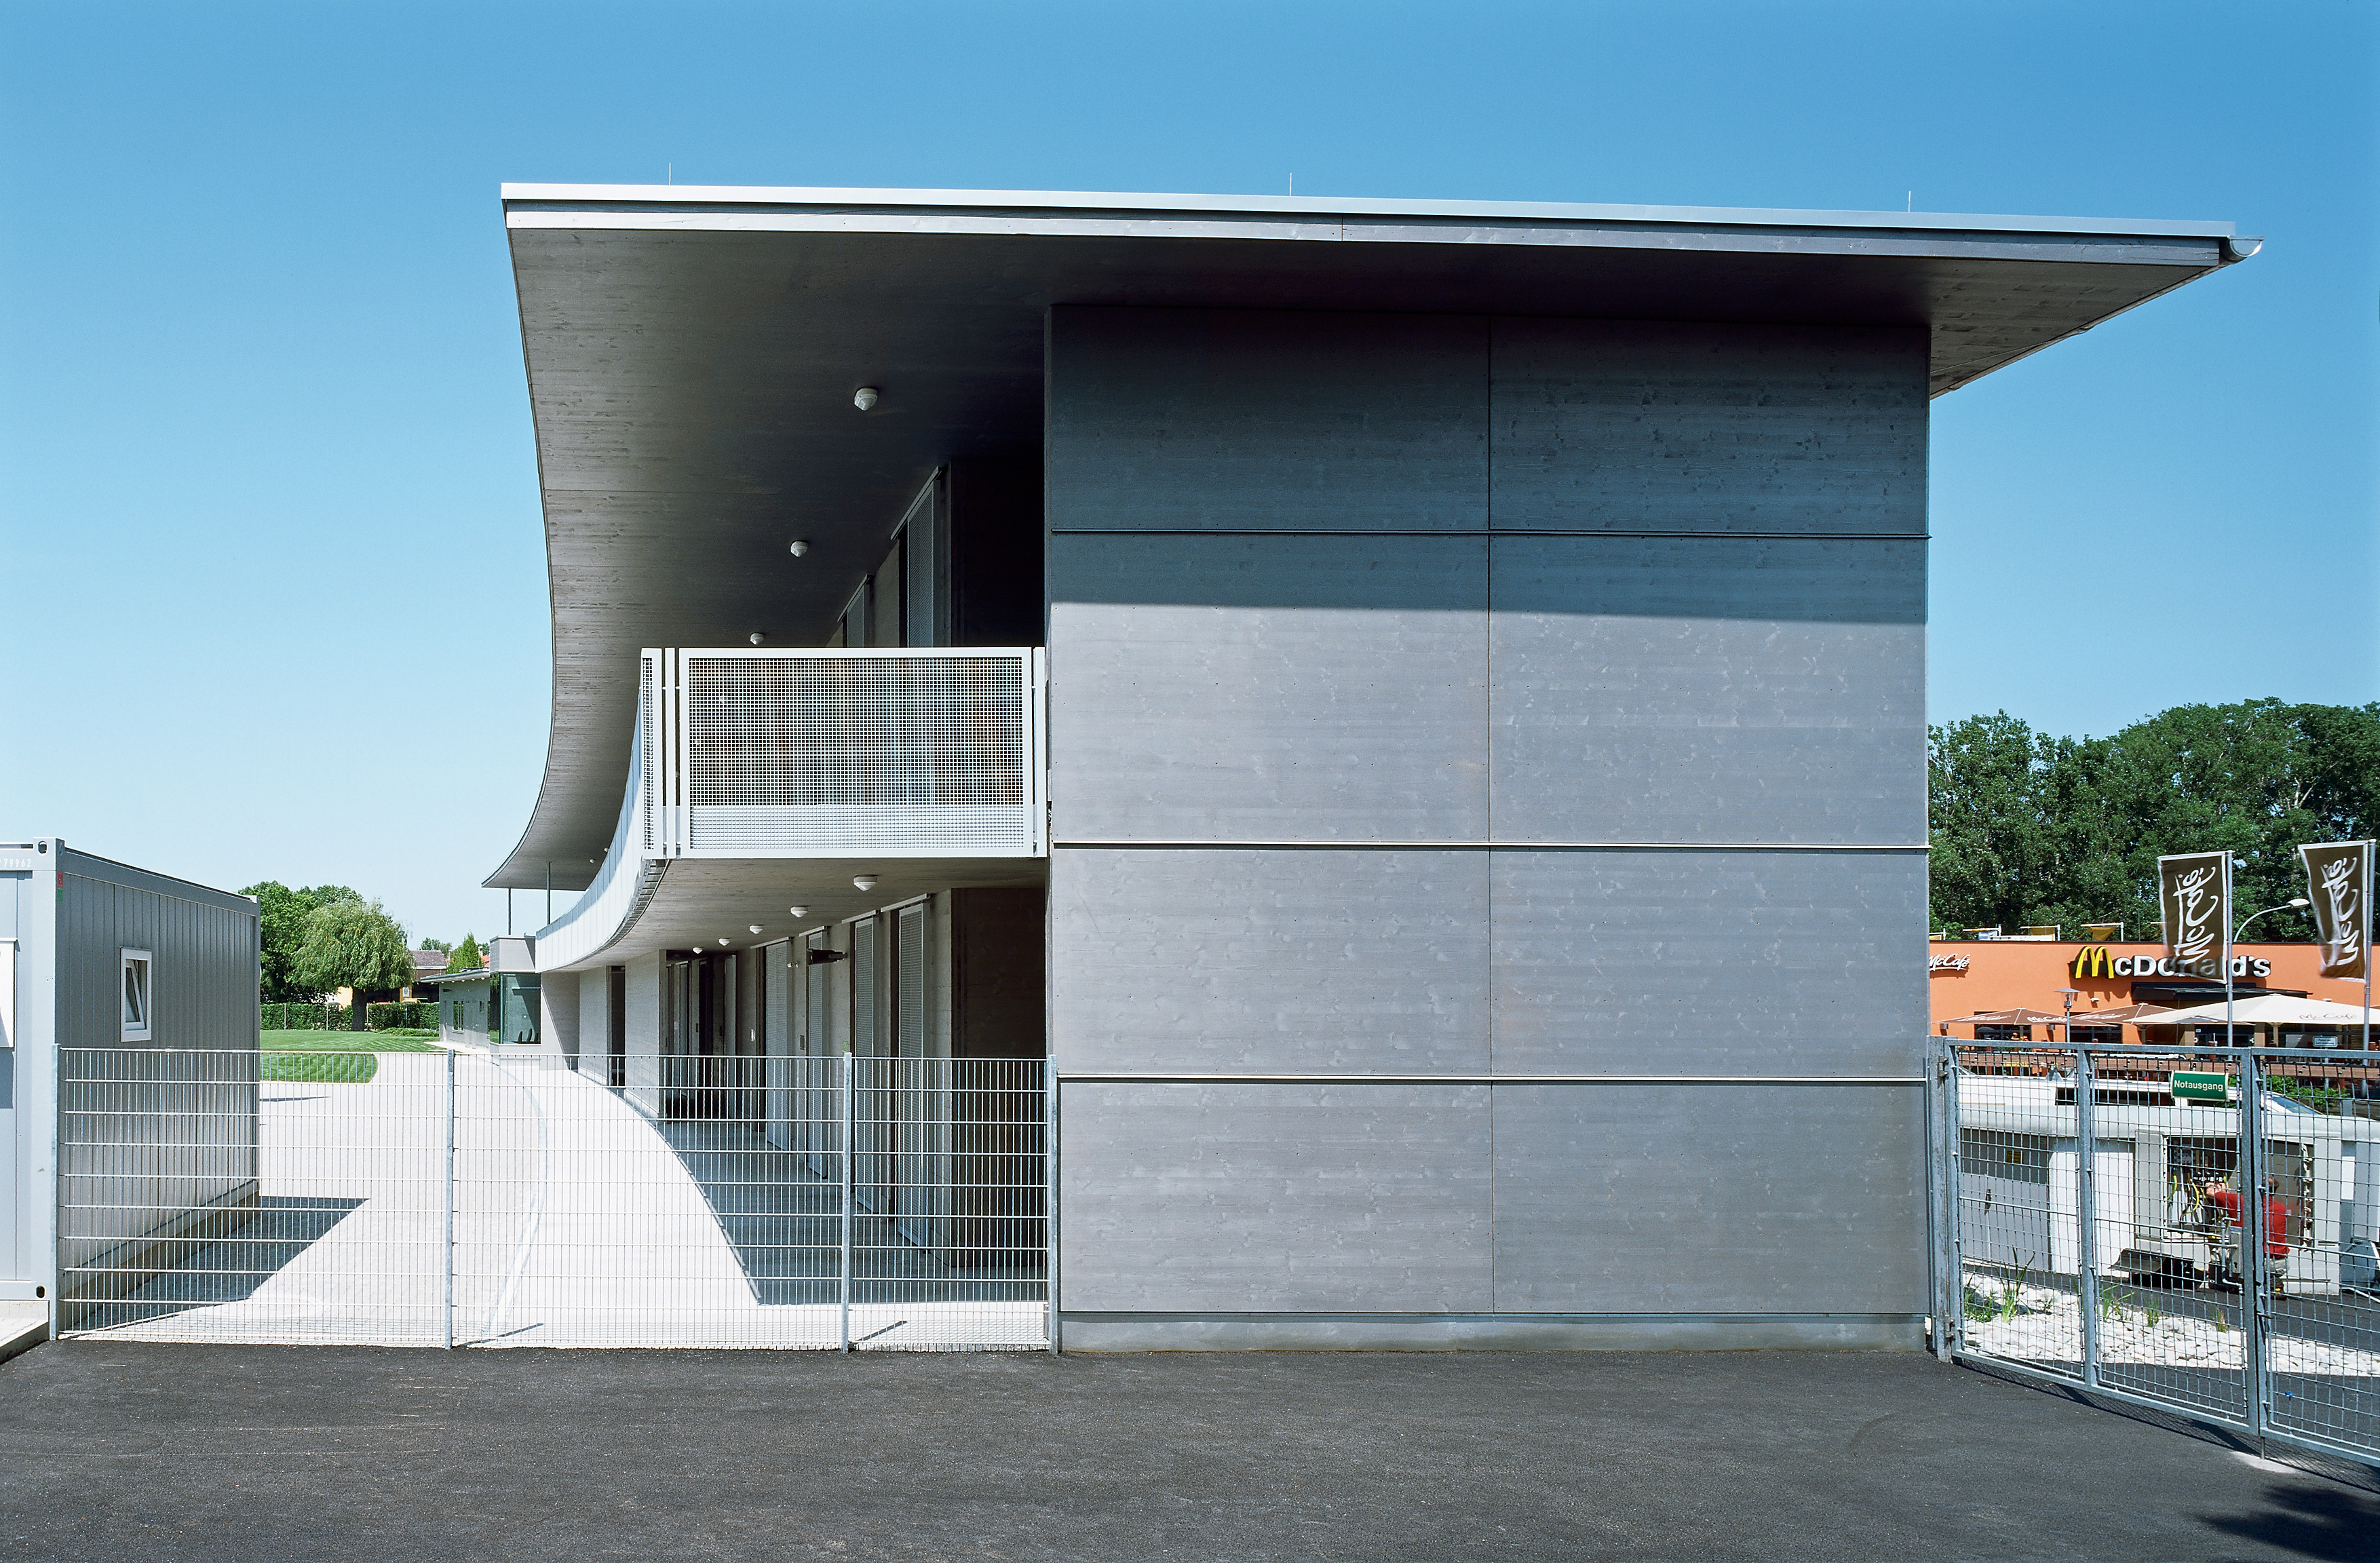 <p>© RUNSER / PRANTL architekten, Weinlandbad, 2130 Mistelbach, Niederösterreich, Österreich, 2009, Freibad, Fotograf Rupert Steiner</p>